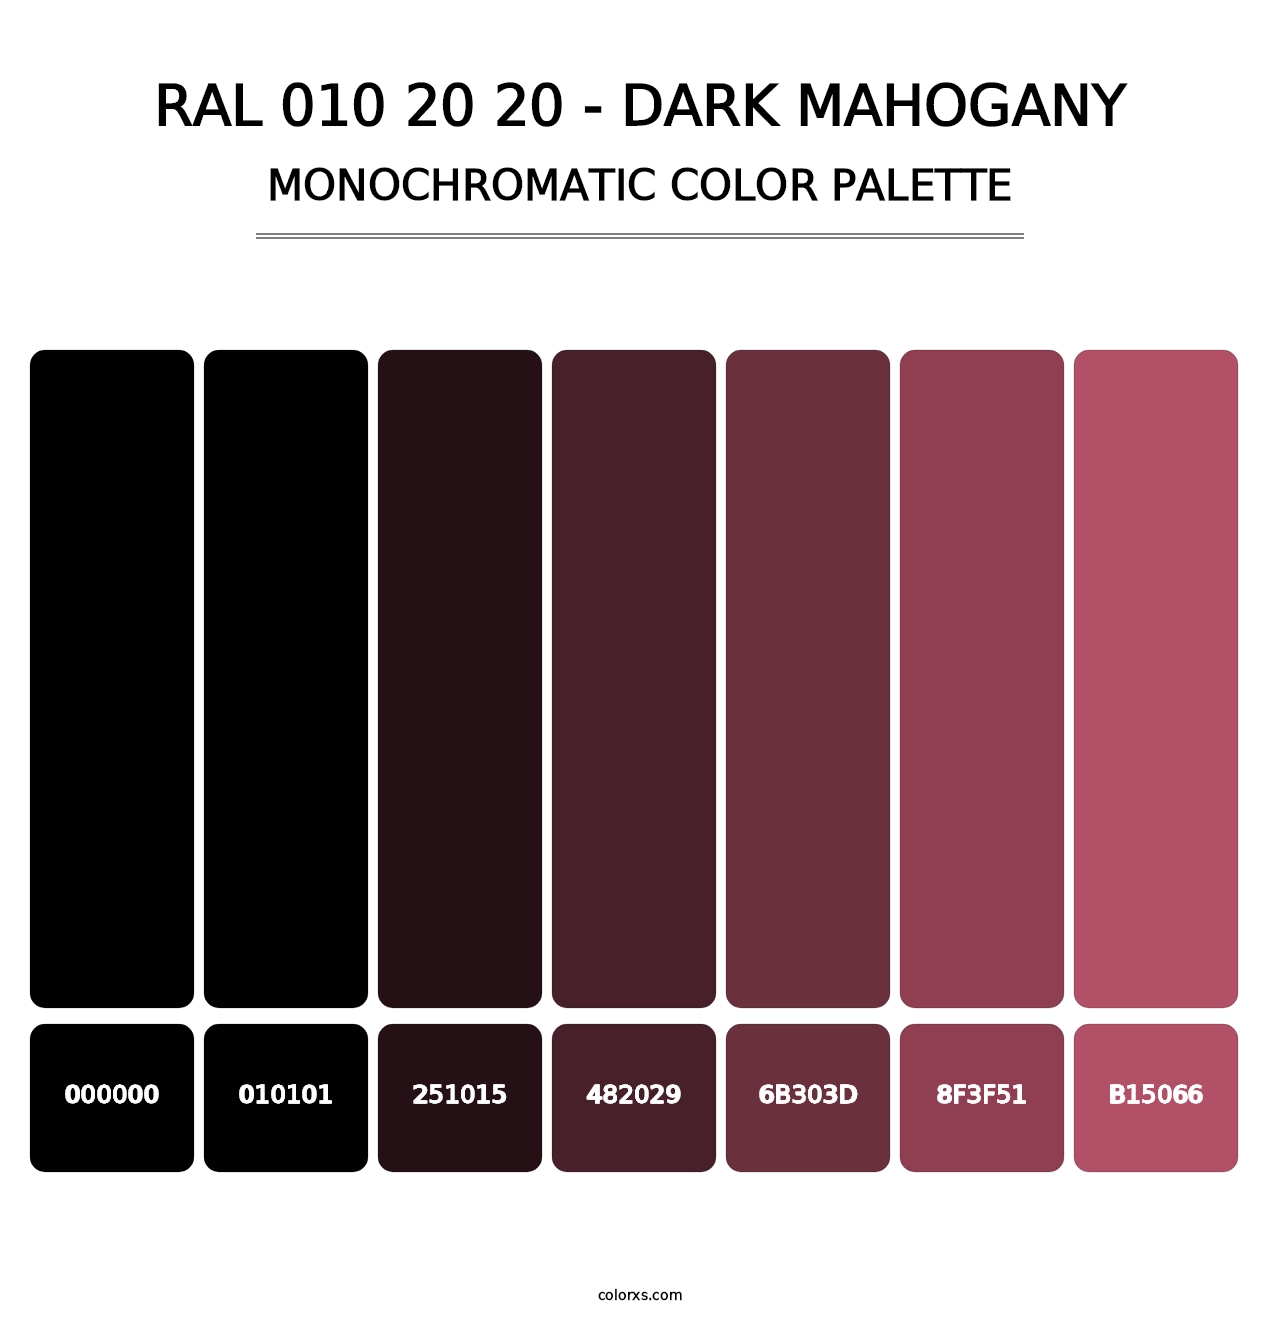 RAL 010 20 20 - Dark Mahogany - Monochromatic Color Palette